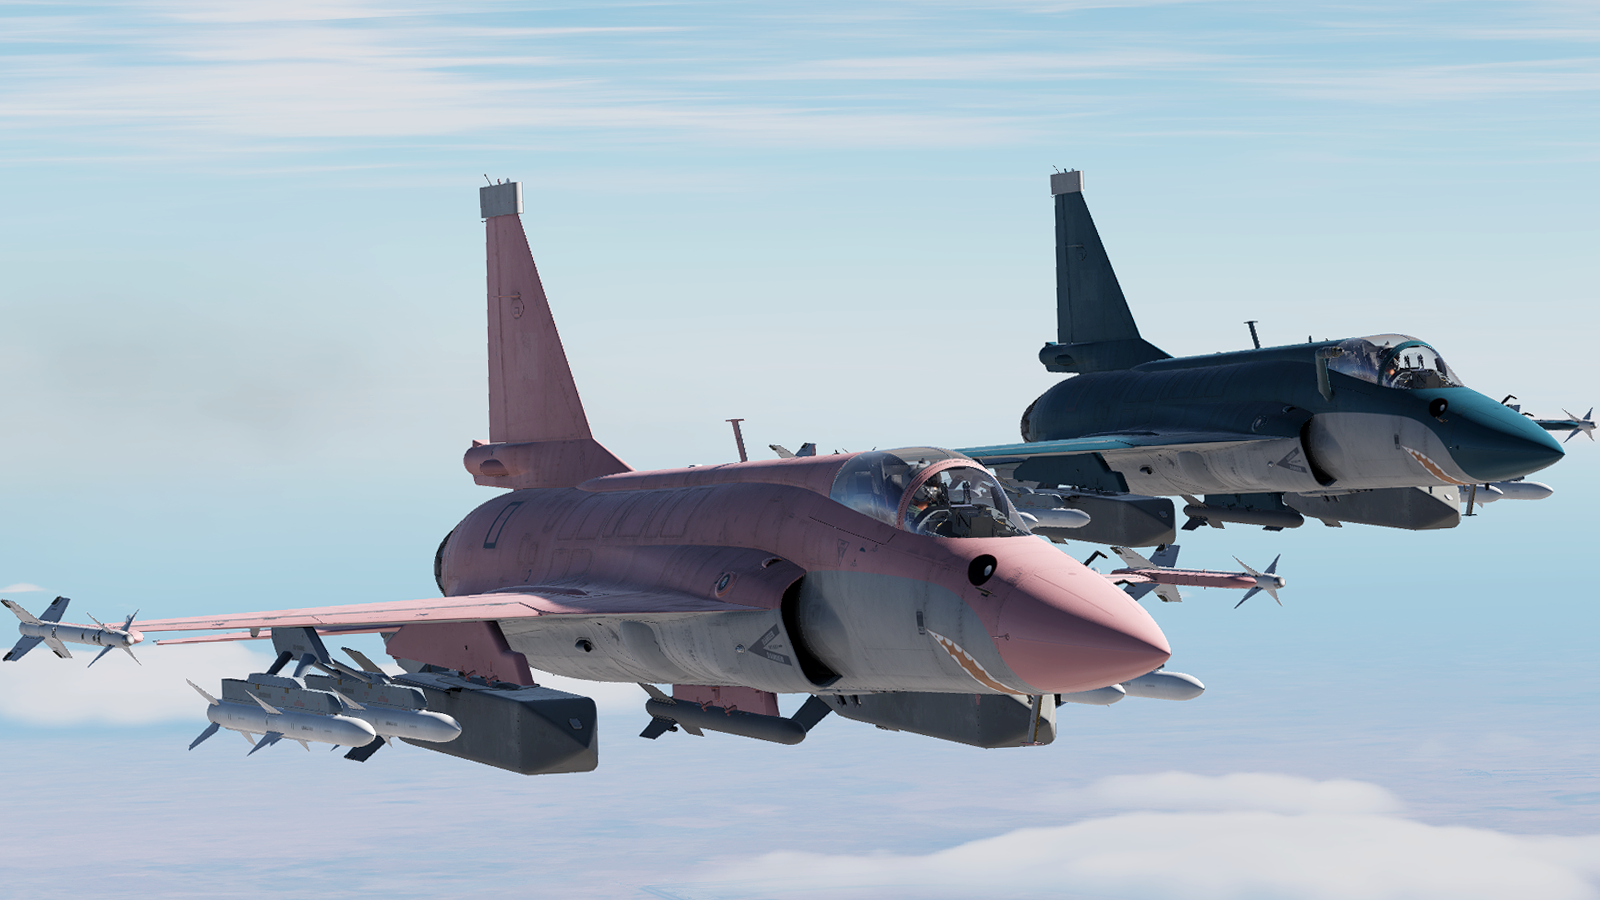 JF-17 Thunder Blahaj / SkyShark (Blue/Pink)